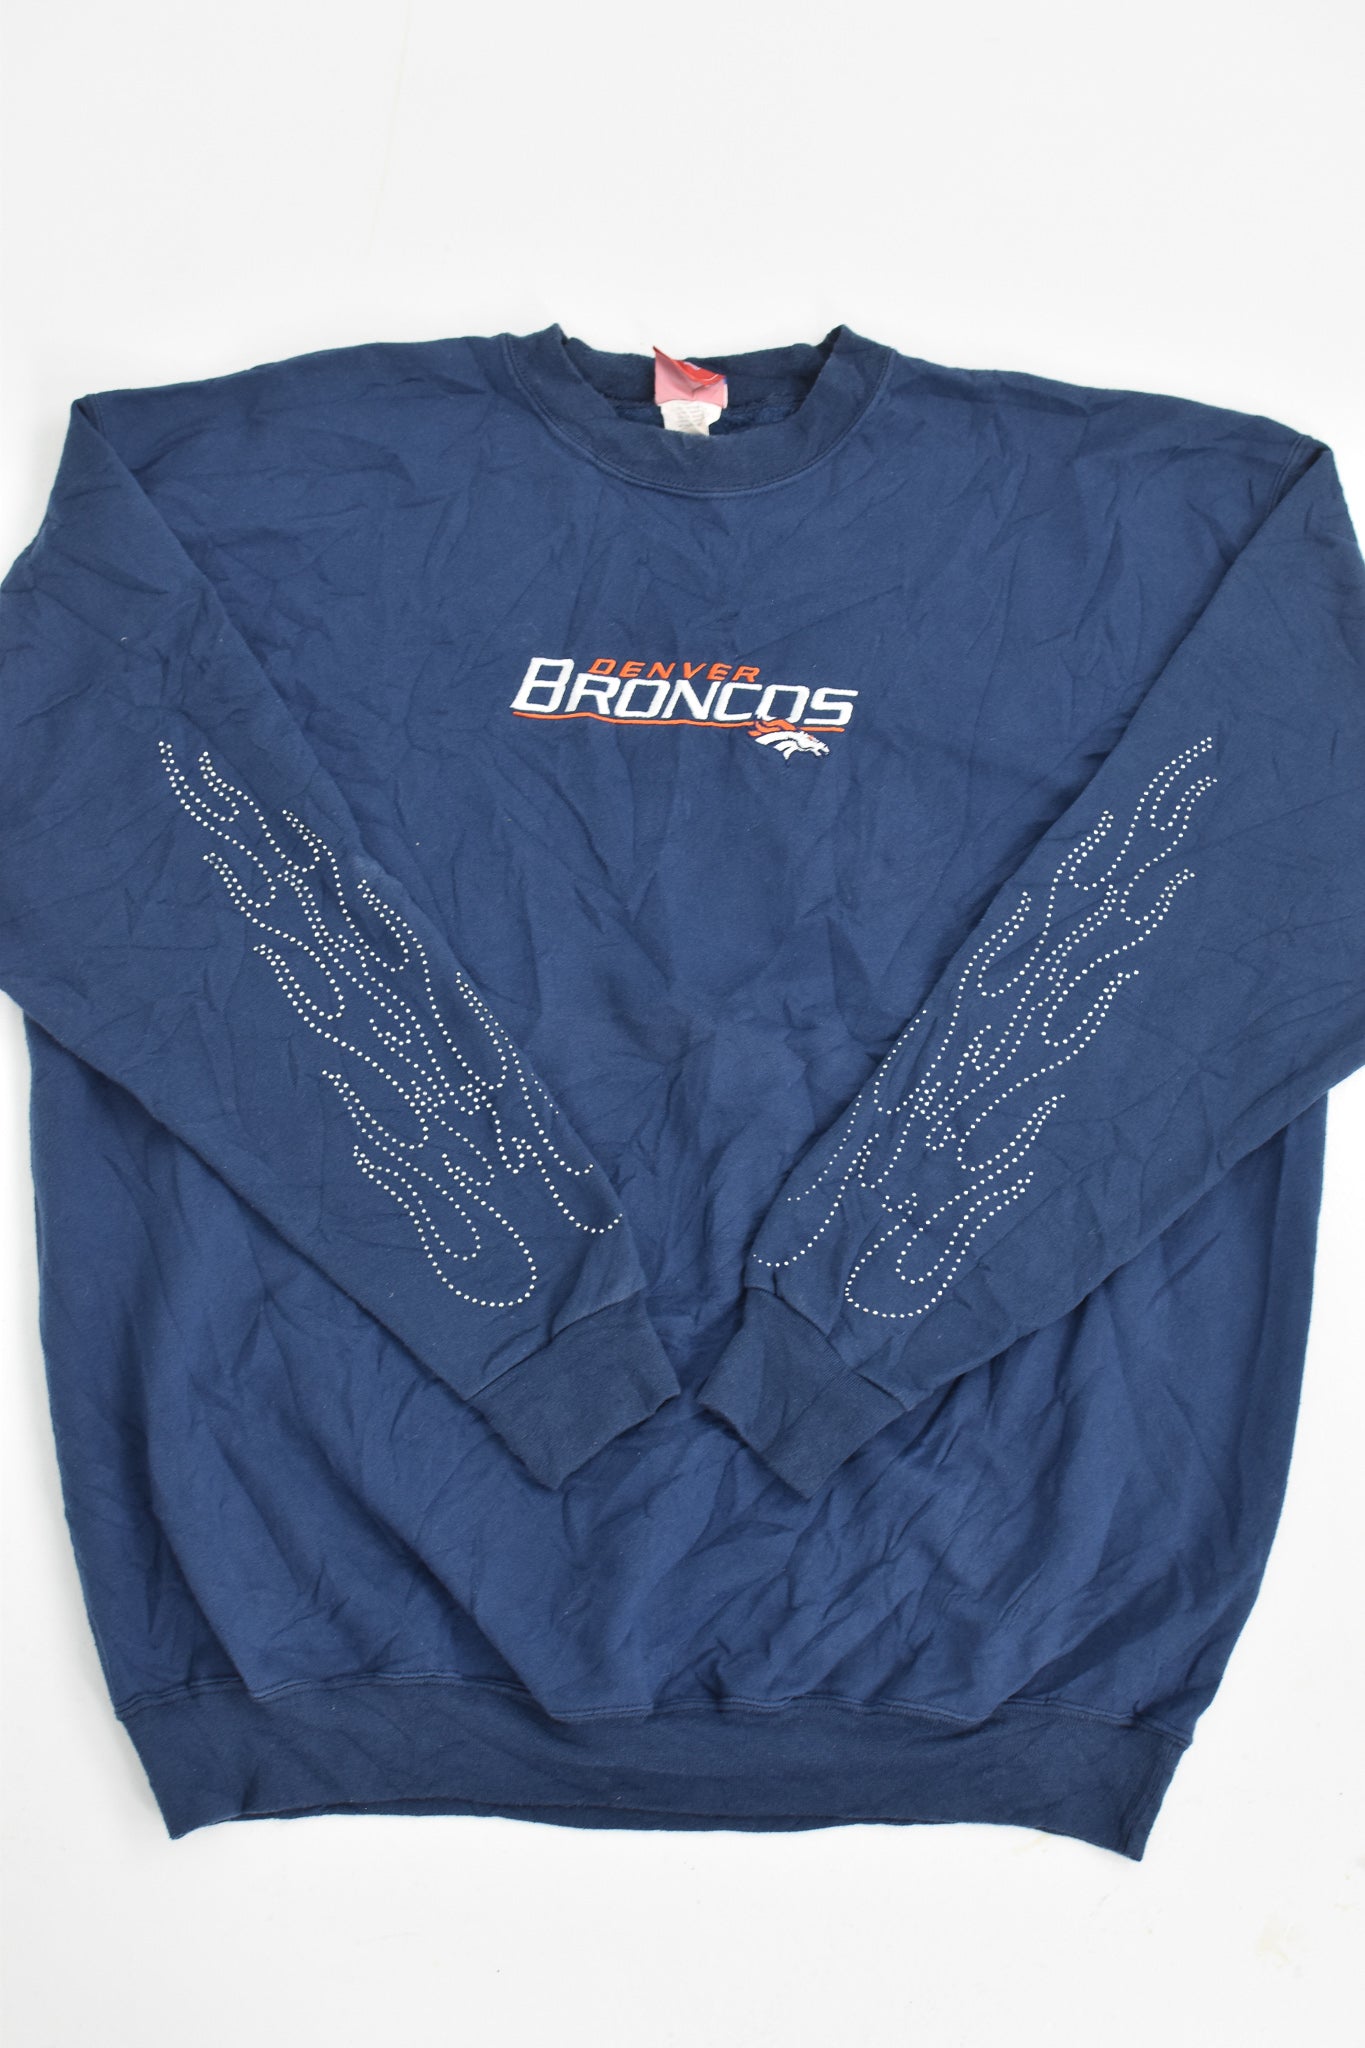 Upcycled Broncos Flame Sweatshirt